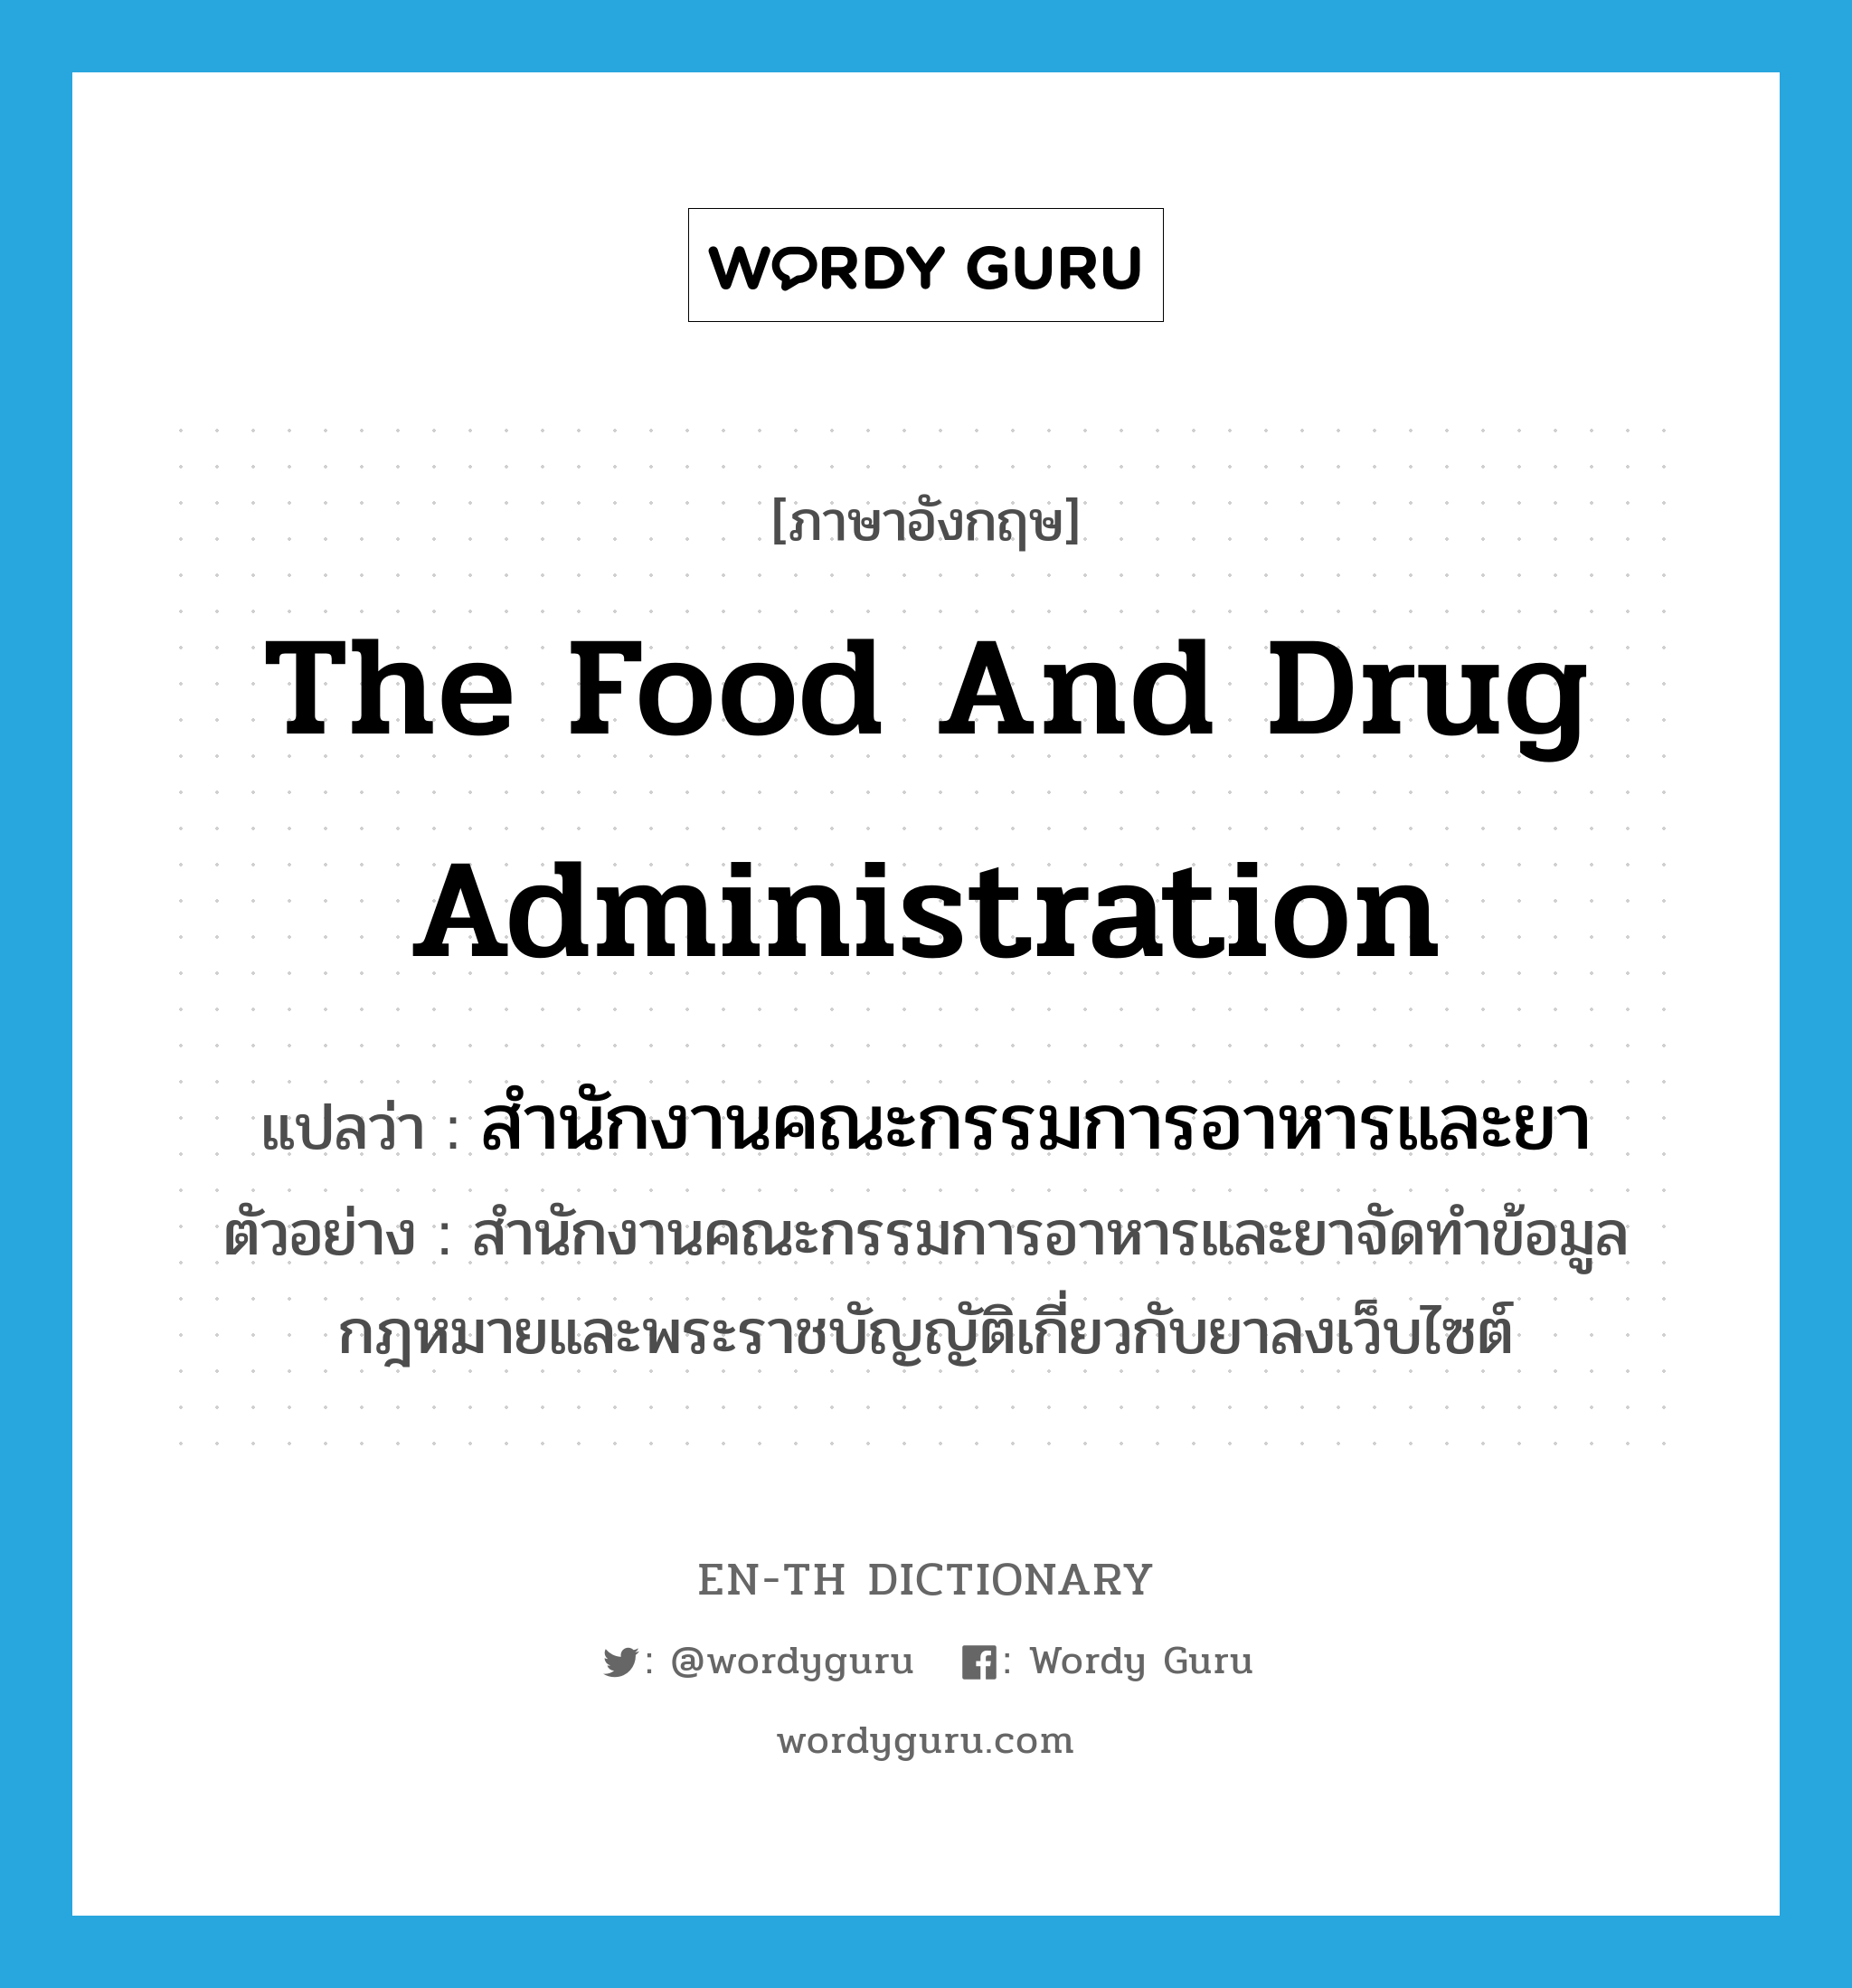 สำนักงานคณะกรรมการอาหารและยา ภาษาอังกฤษ?, คำศัพท์ภาษาอังกฤษ สำนักงานคณะกรรมการอาหารและยา แปลว่า the Food and Drug Administration ประเภท N ตัวอย่าง สำนักงานคณะกรรมการอาหารและยาจัดทำข้อมูลกฎหมายและพระราชบัญญัติเกี่ยวกับยาลงเว็บไซต์ หมวด N